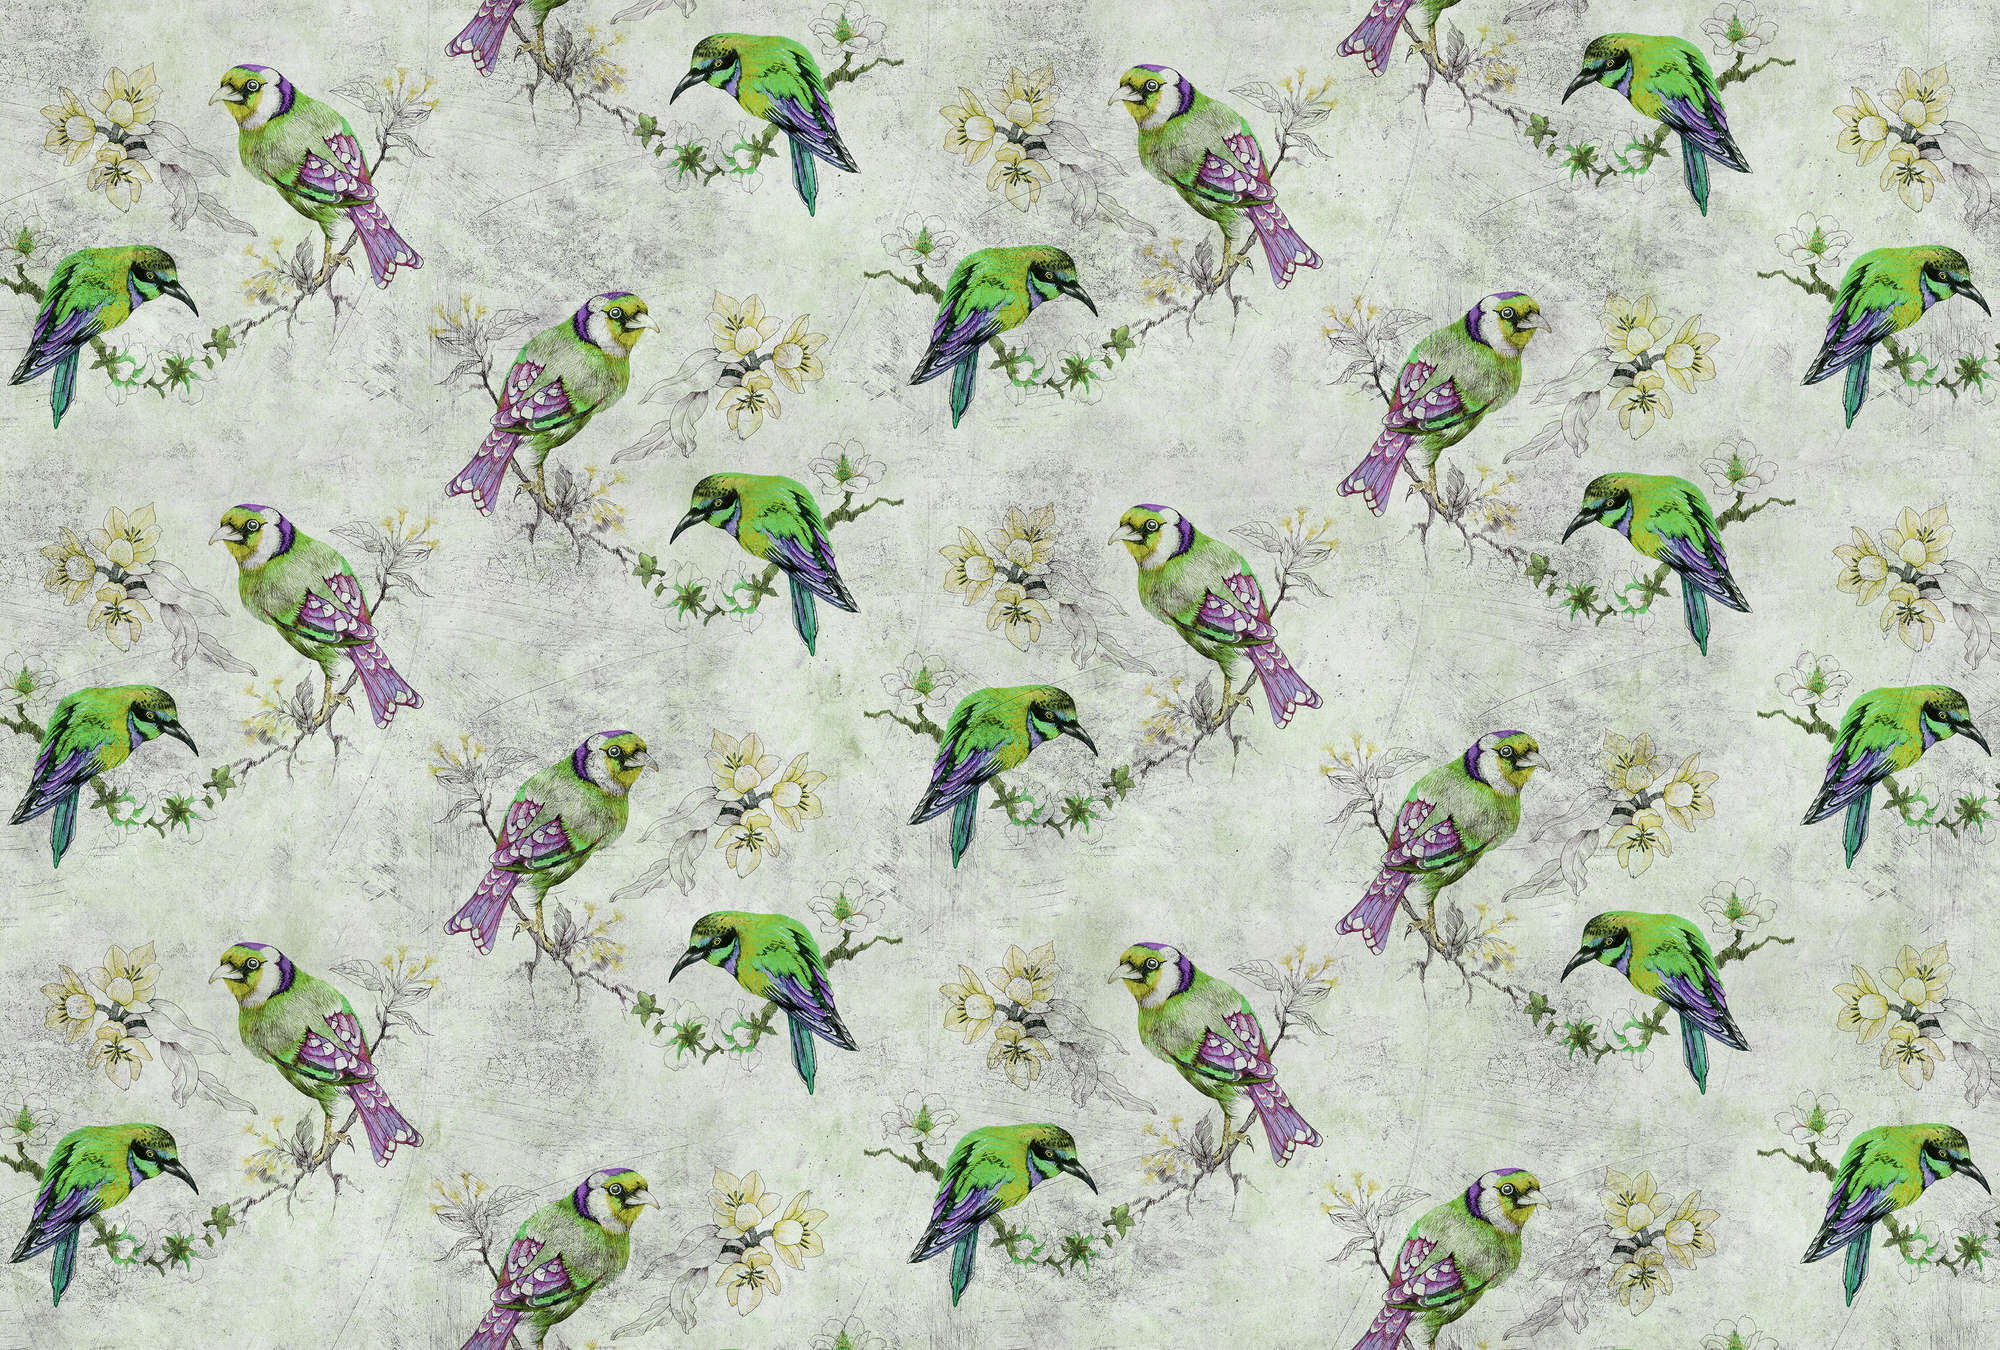             Love birds 2 - Bunte Fototapete in kratzer Struktur mit skizzierten Vögeln – Grau, Grün | Premium Glattvlies
        